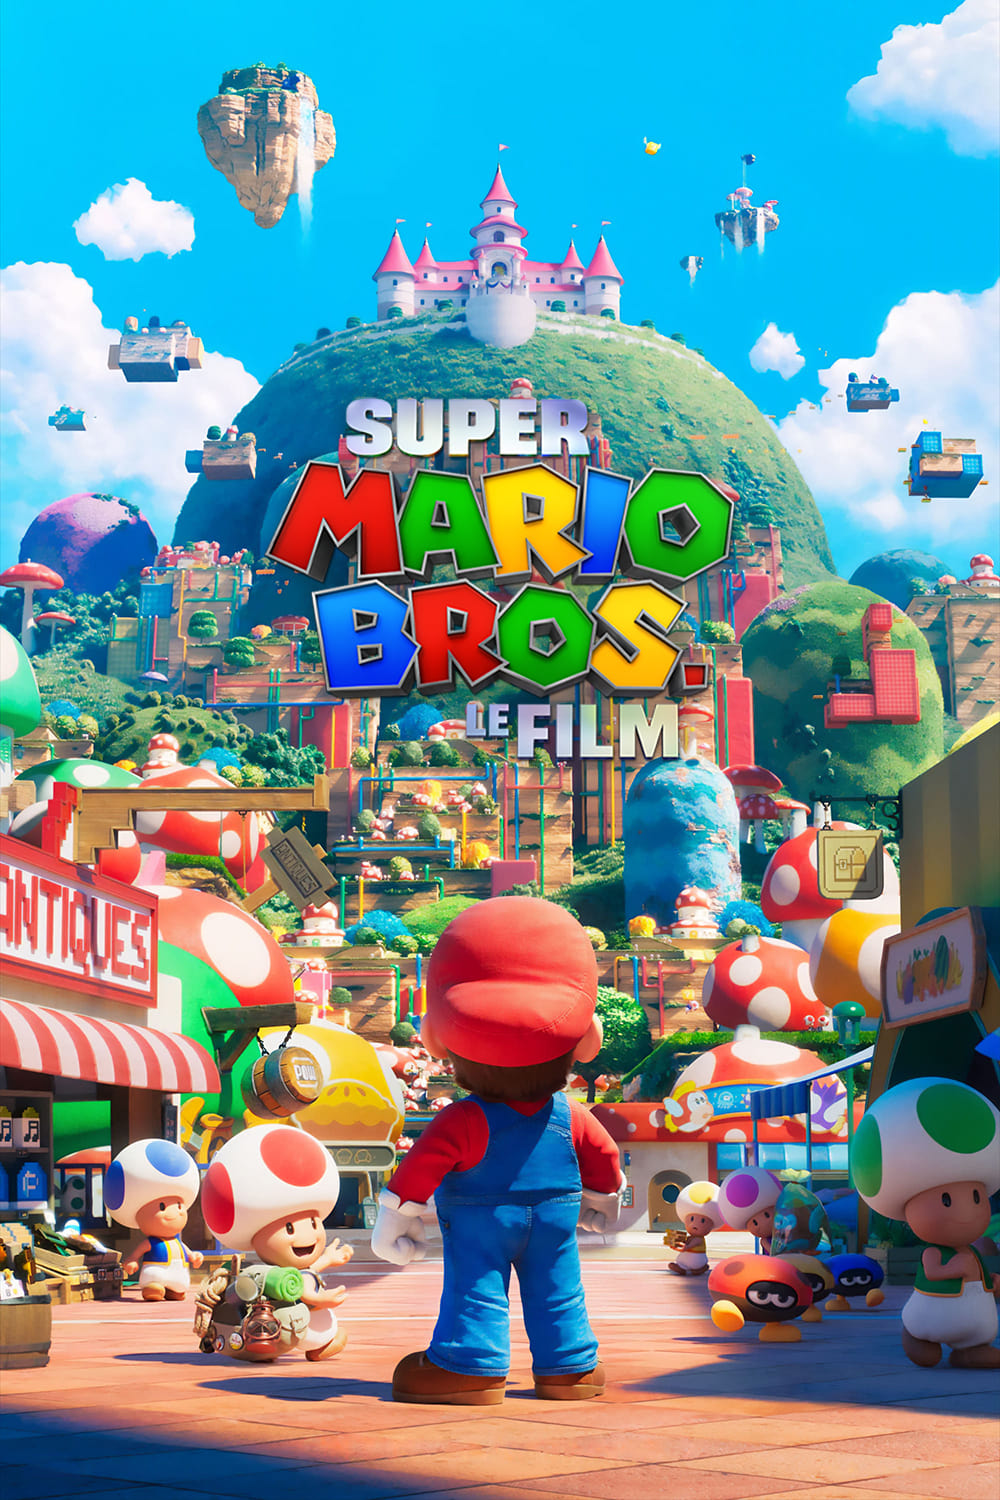 Affiche du film Super Mario Bros, le film